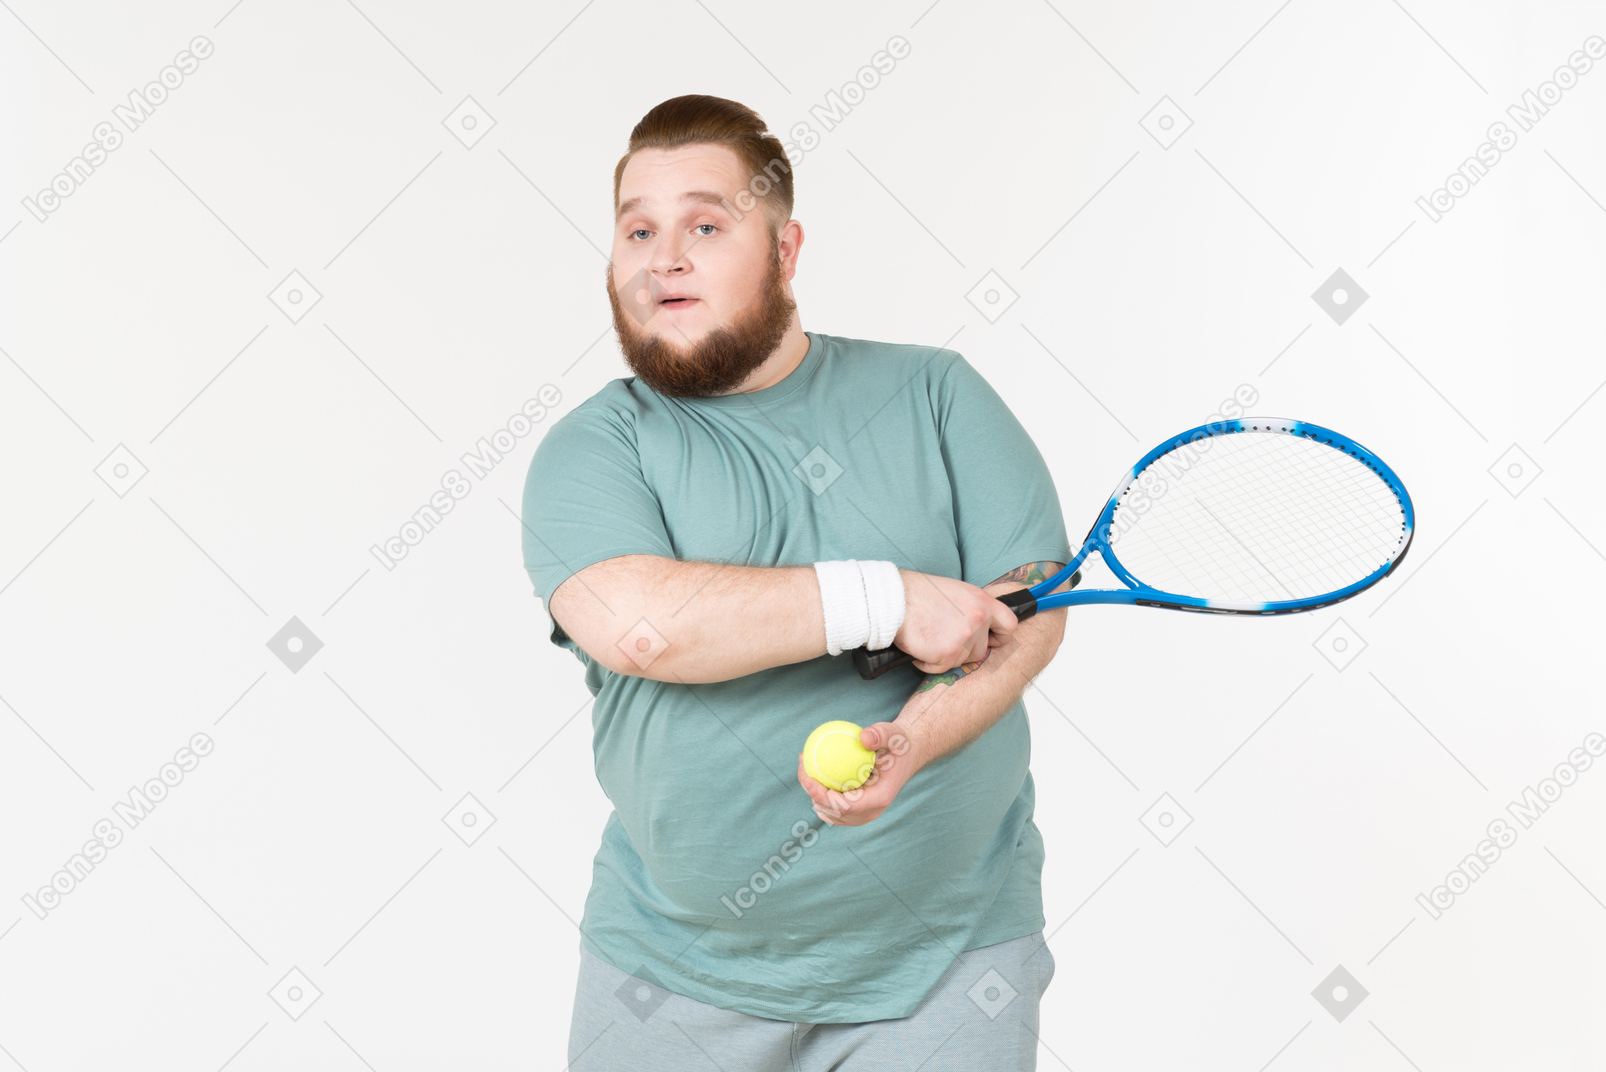 테니스 라켓과 테니스 공을 들고 운동복에 큰 사람